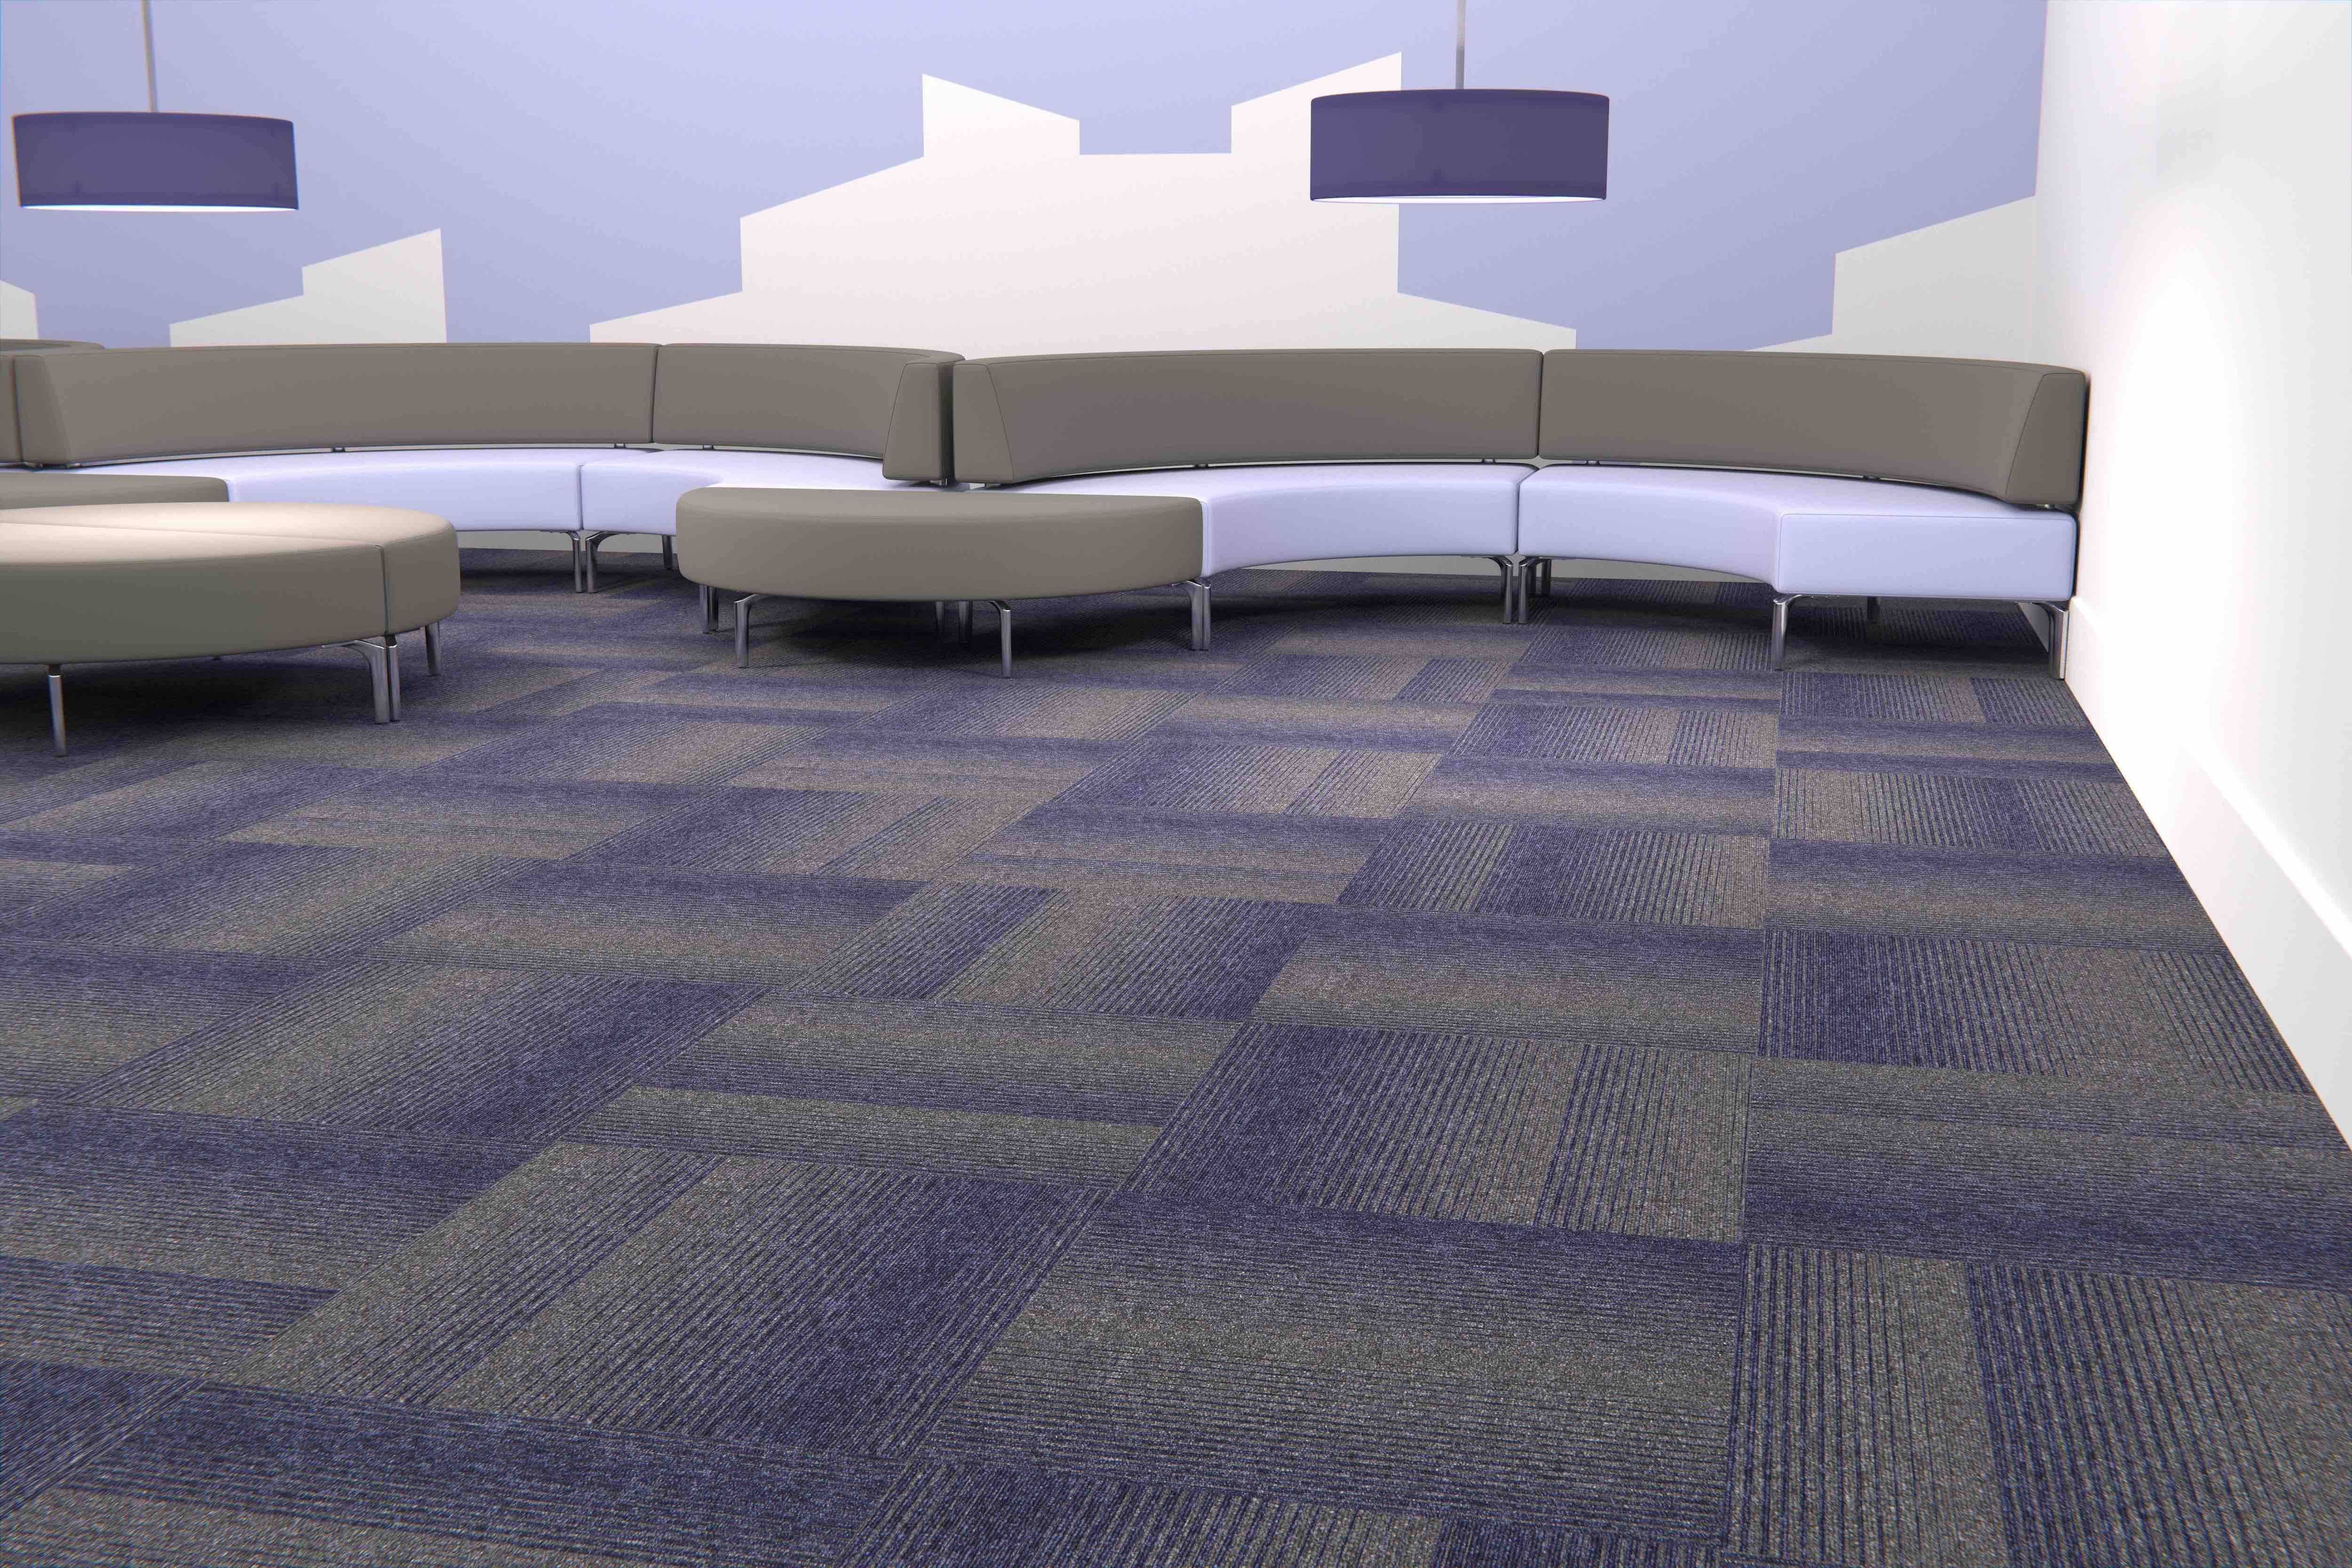 Paragon Diversity Groove Carpet Tile Jaxx